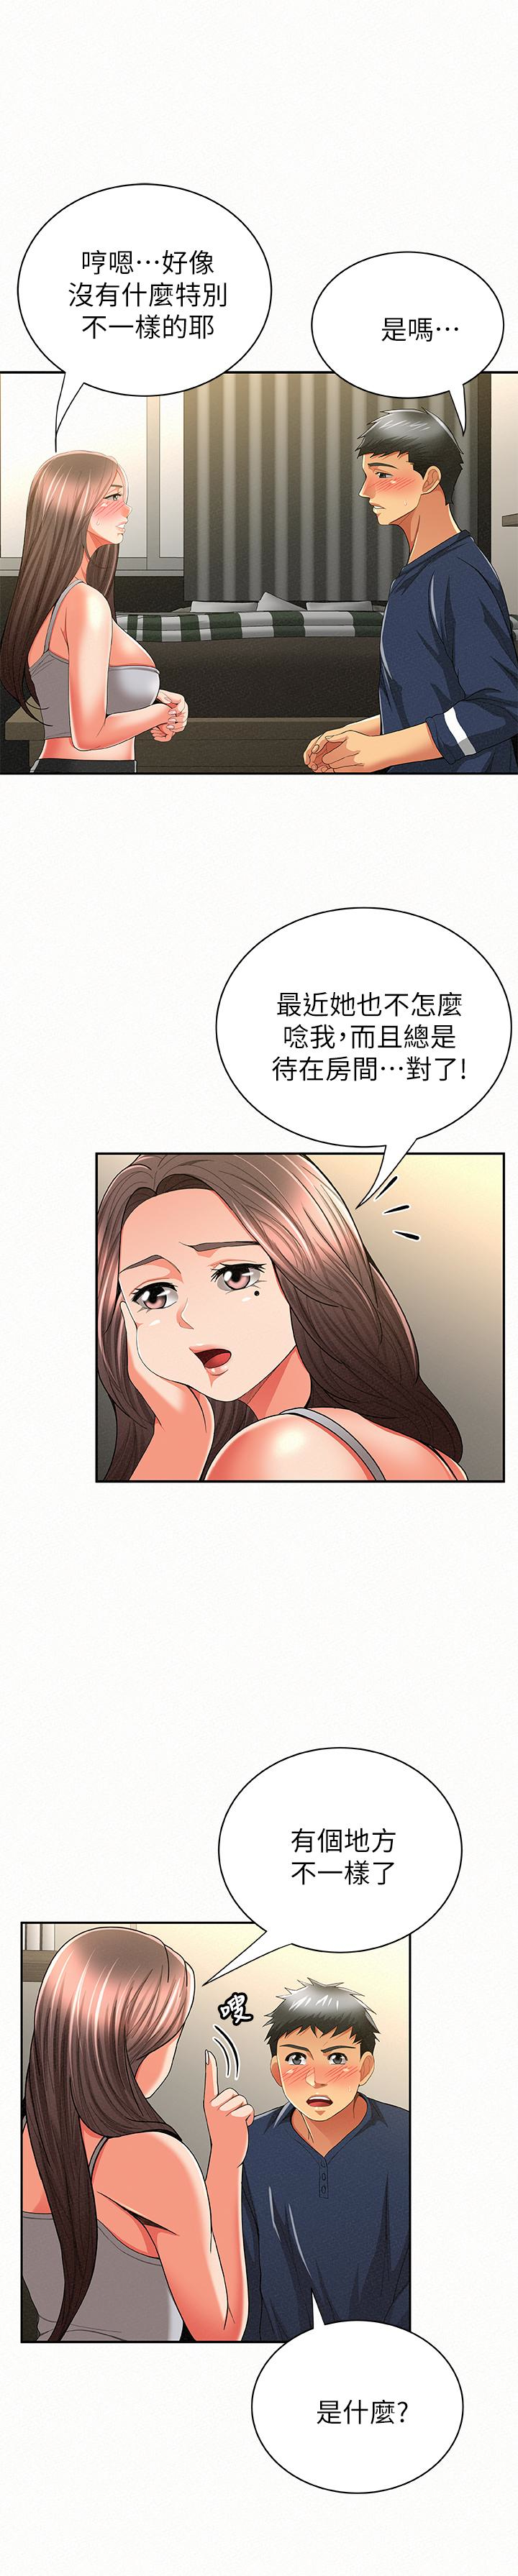 韩国污漫画 報告夫人 第39话-夫人房间传出的呻吟声 24